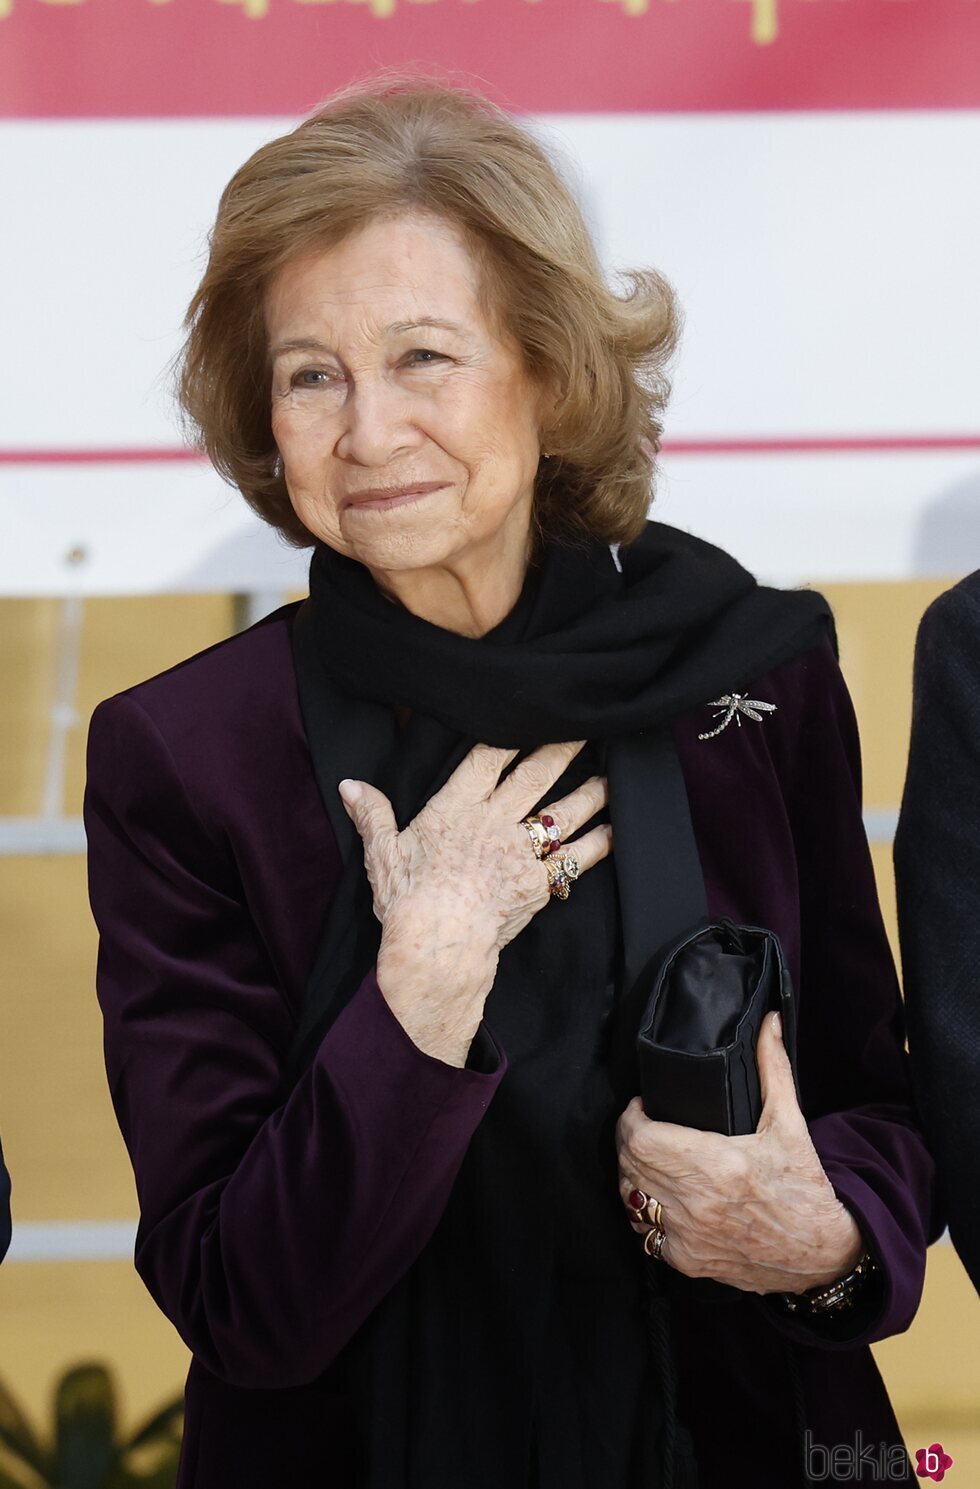 La Reina Sofía con su anillo de pedida en la entrega del Premio Reina Sofía de Pintura y Escultura